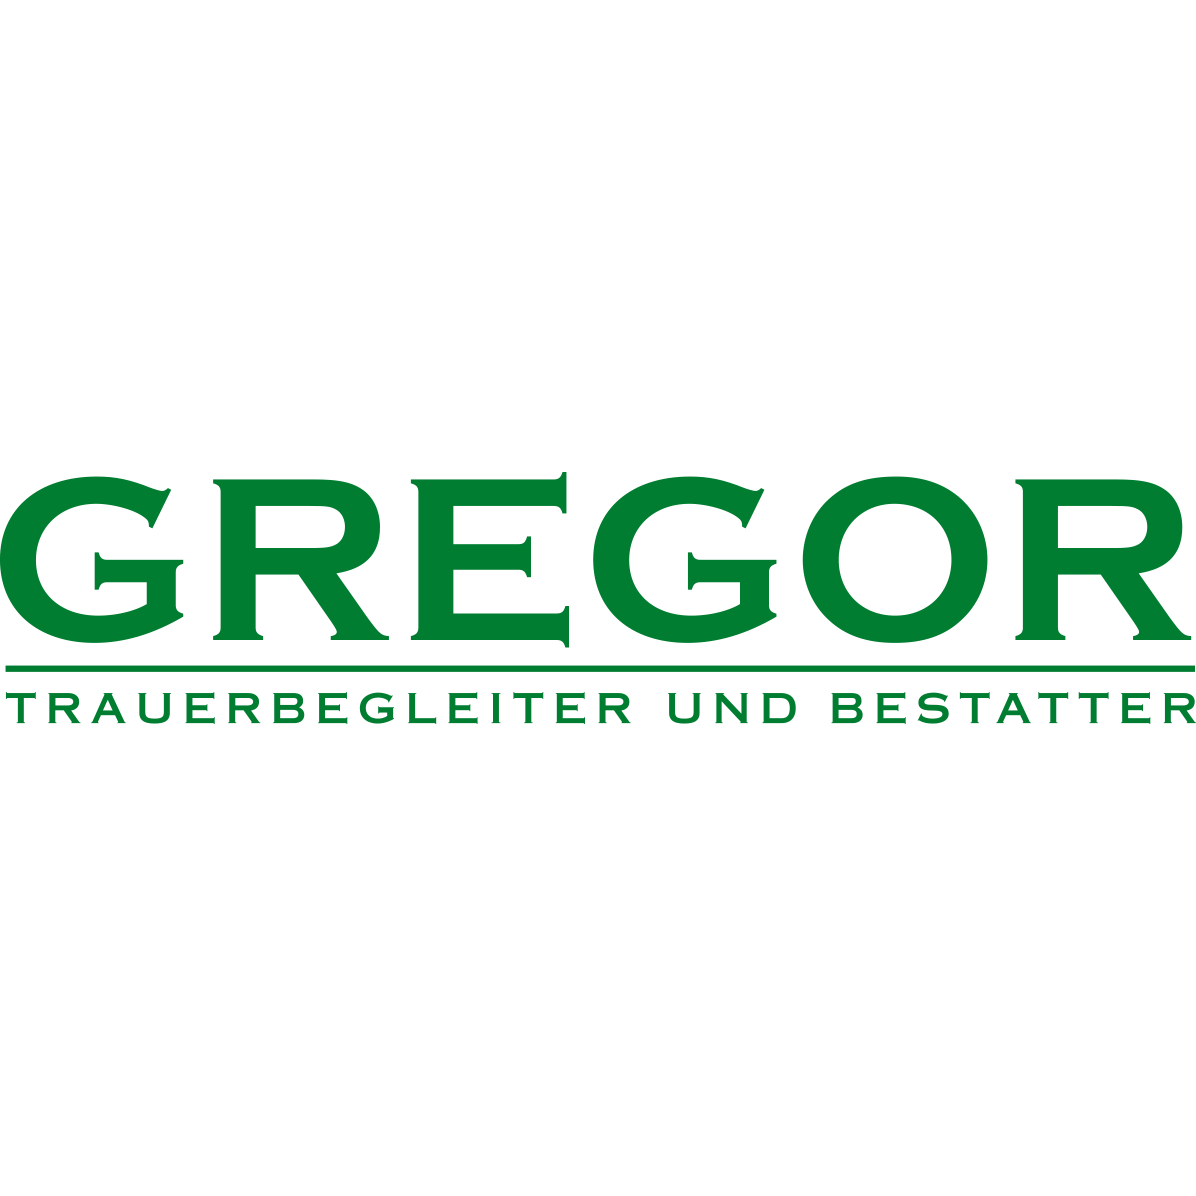 Trauerbegleitung und Bestattungen Jürgen Gregor GmbH in Hirschberg Logo